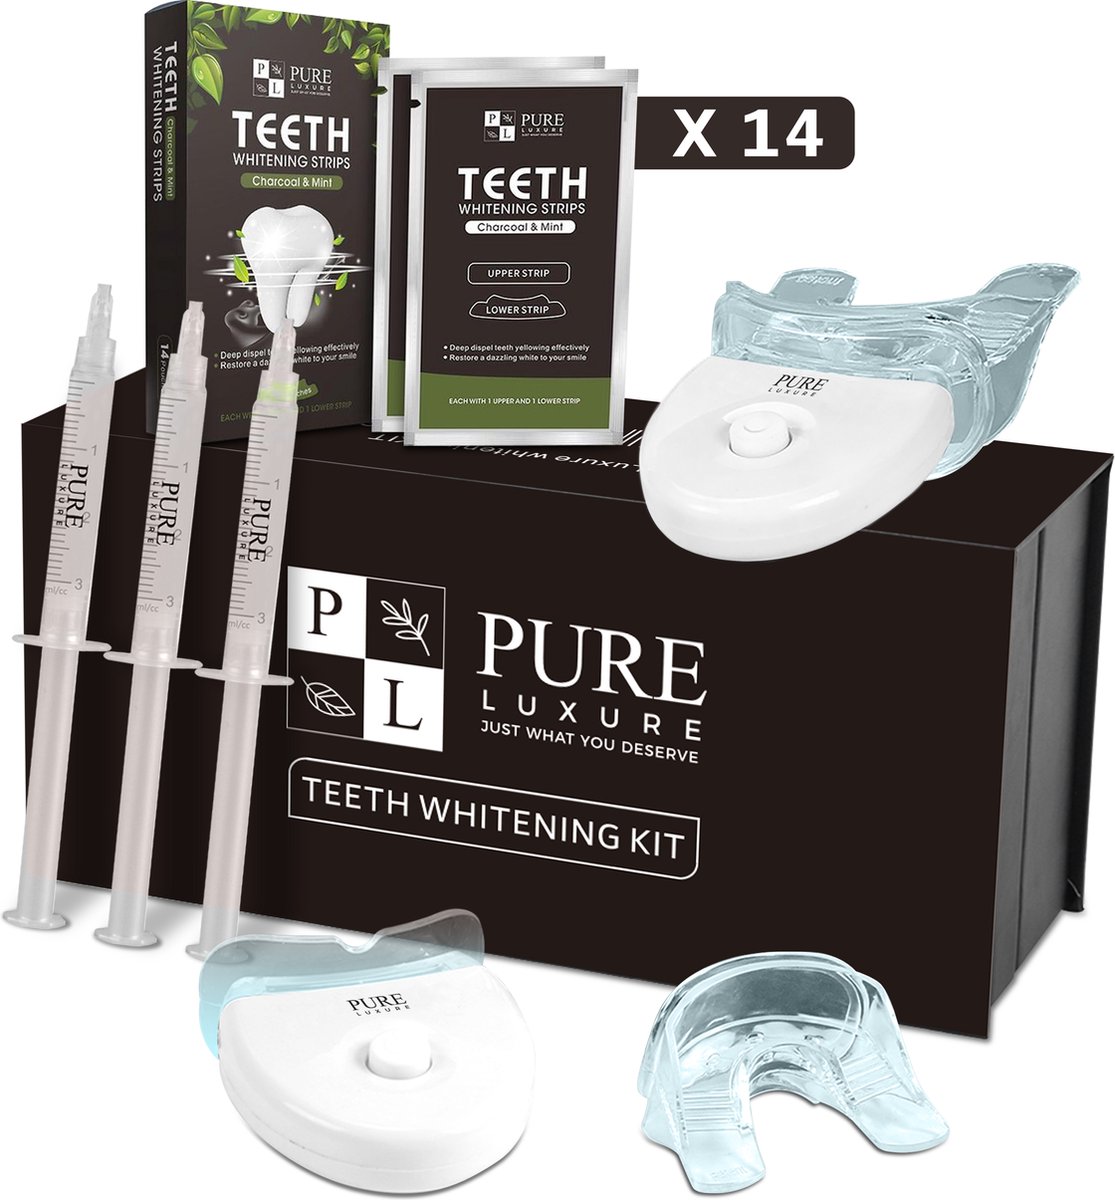 Teeth whitening kit - Zonder peroxide - met handleiding en ebook -  Tandenbleekset -... | bol.com